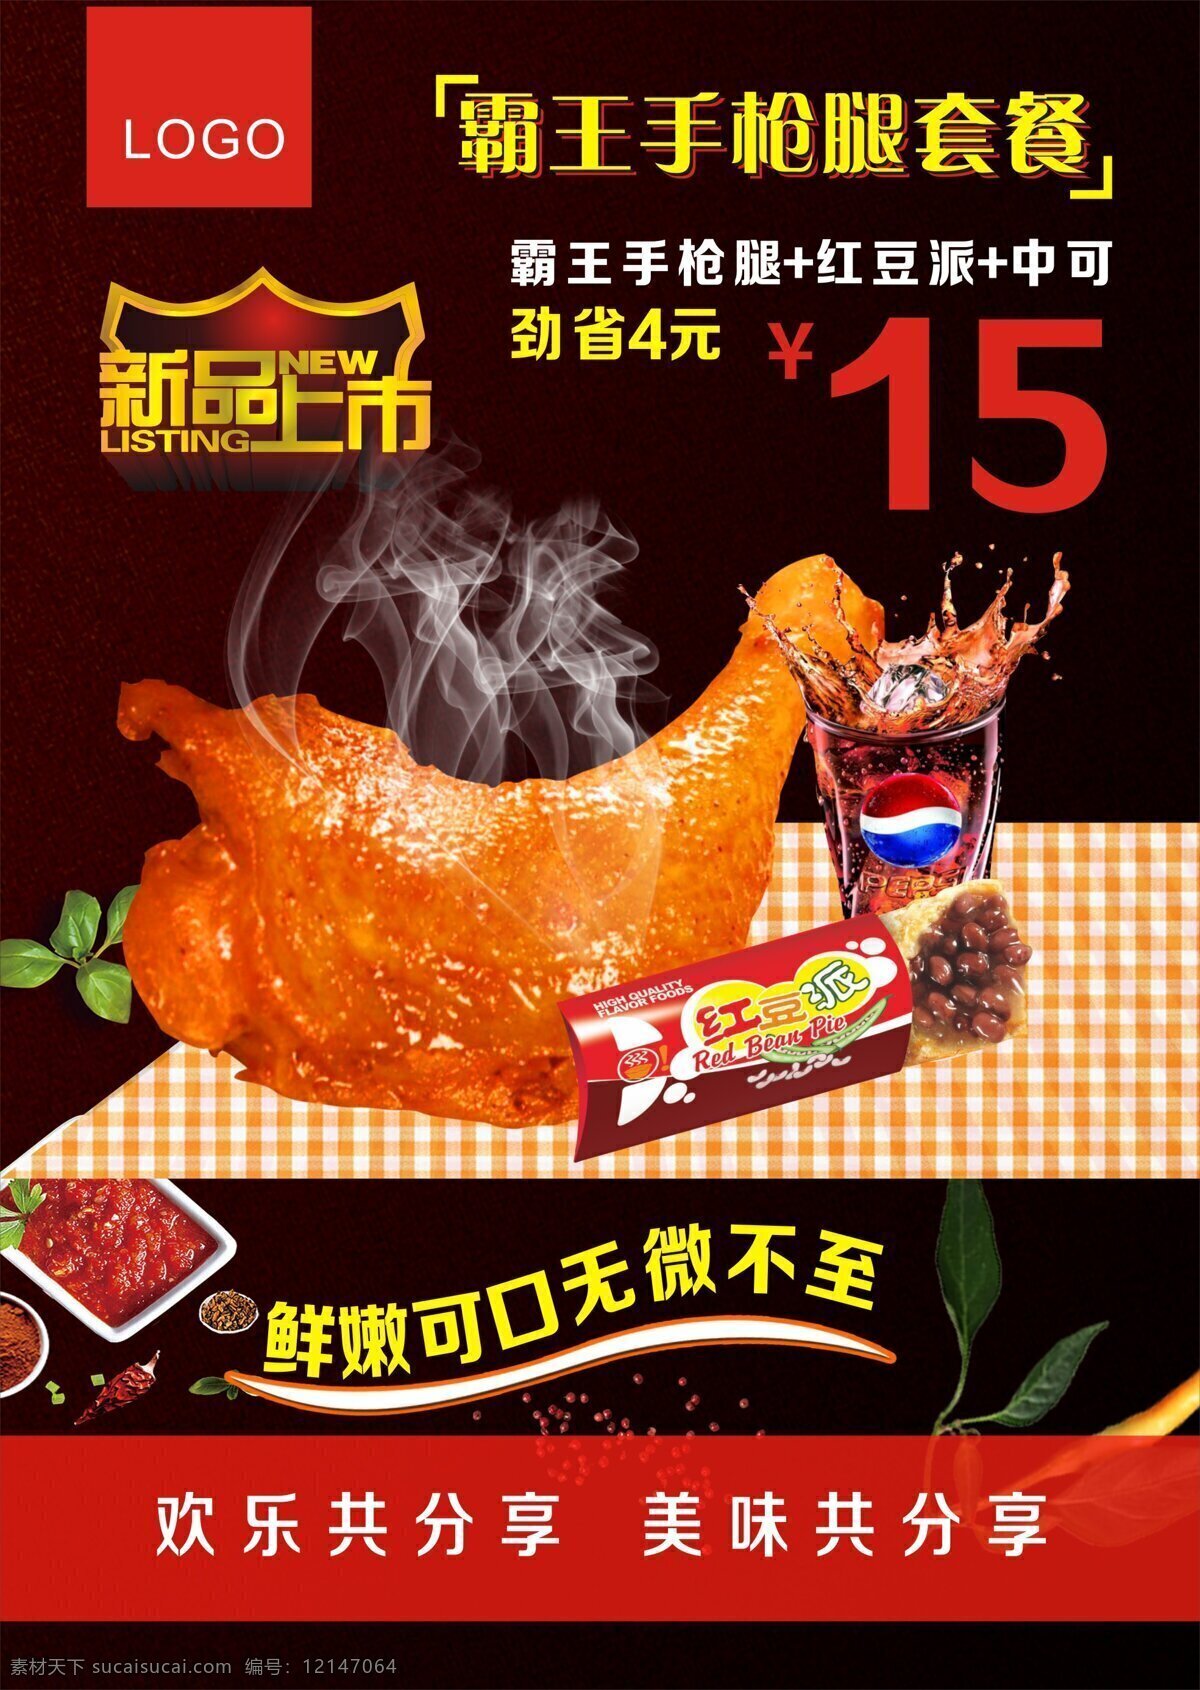 大力神 鸡腿 海报 平面广告 炸鸡 美食 新品上市